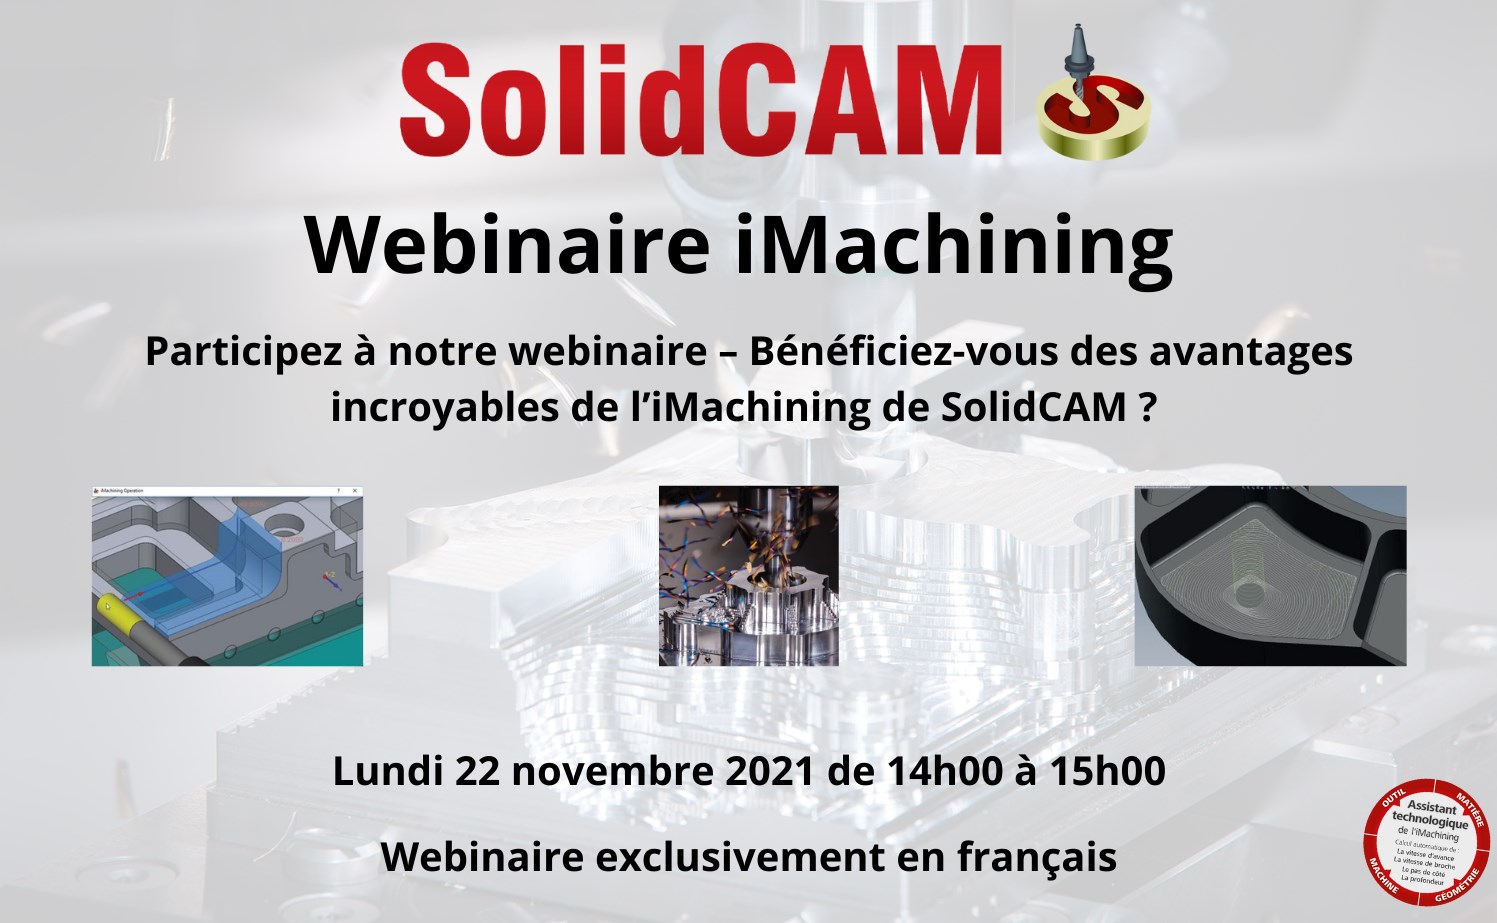 SolidCAM France organise un webinaire en français.